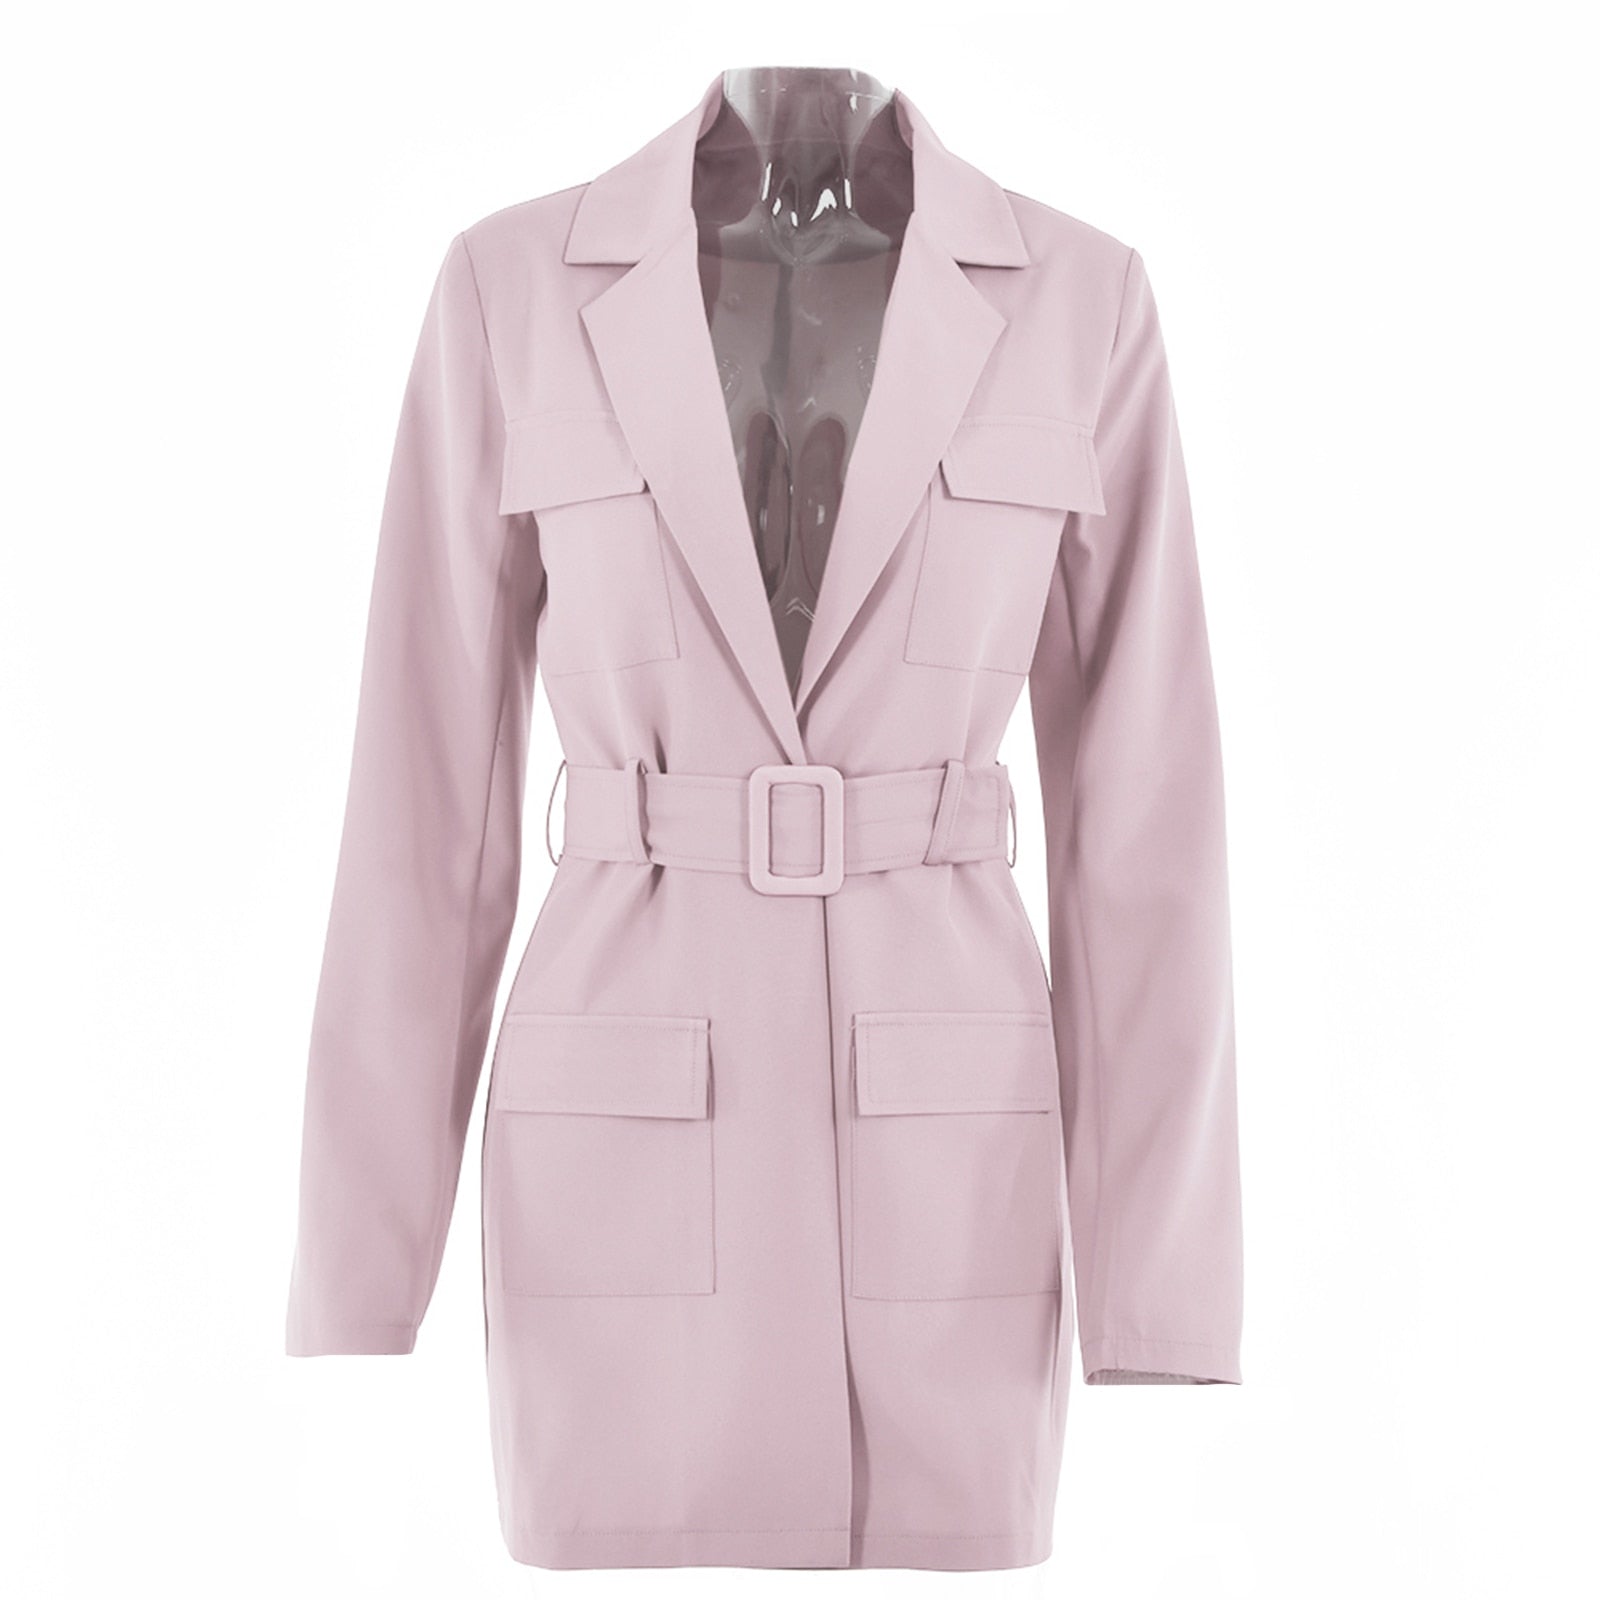 Ootdgirl Women Blazer Dress Turn-Down Collar Long Sleeve Belt Pocket Coat Office Lady Casual Jacket Single Suit Spring Fall Streetwear